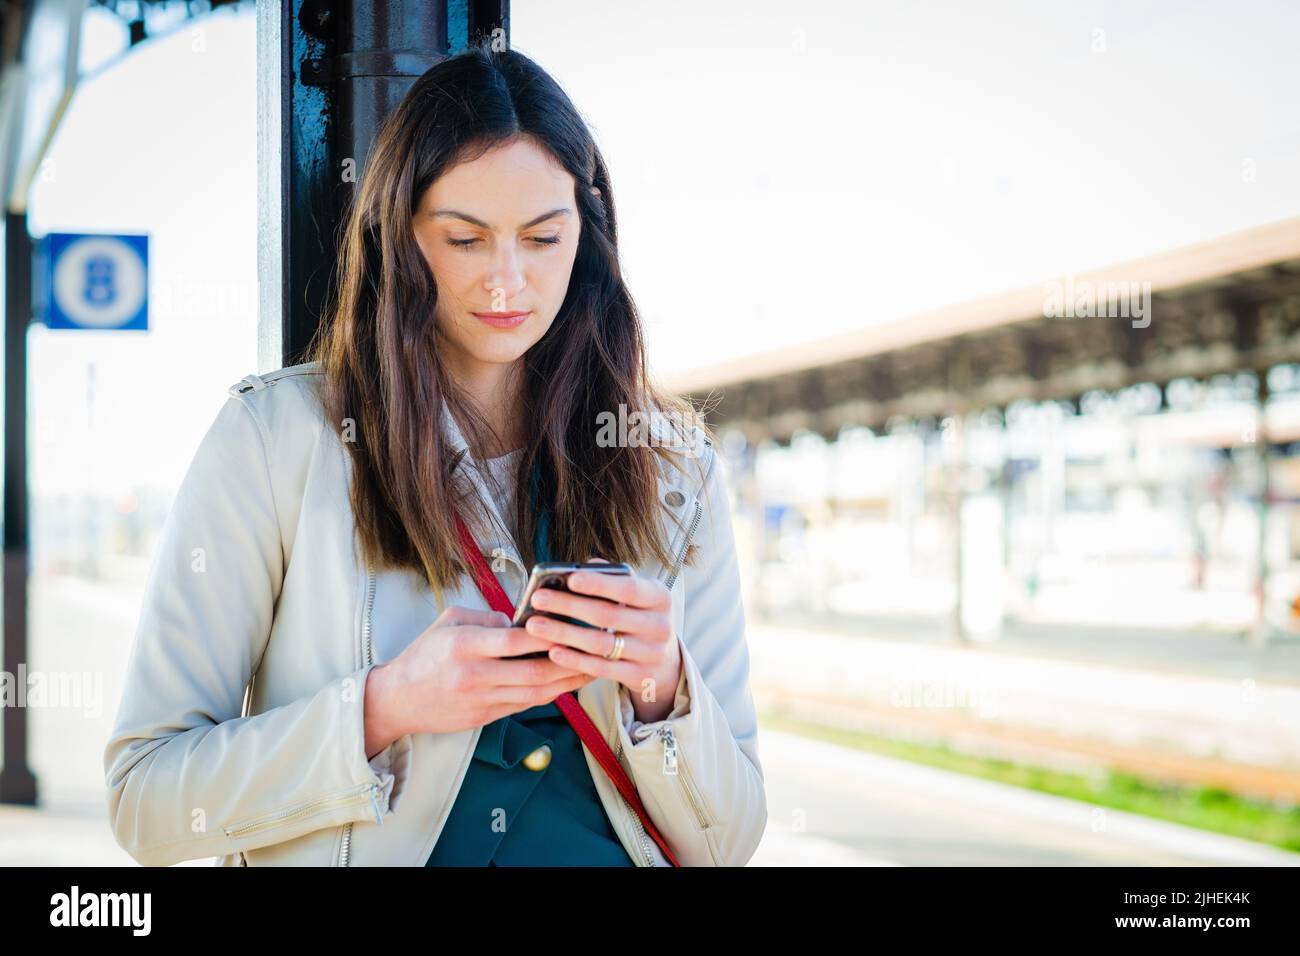 Femme d'affaires souriante utilisant un smartphone en attendant dans une gare - jeune fille étudiante attrayante utilisant le téléphone portable en position debout Banque D'Images